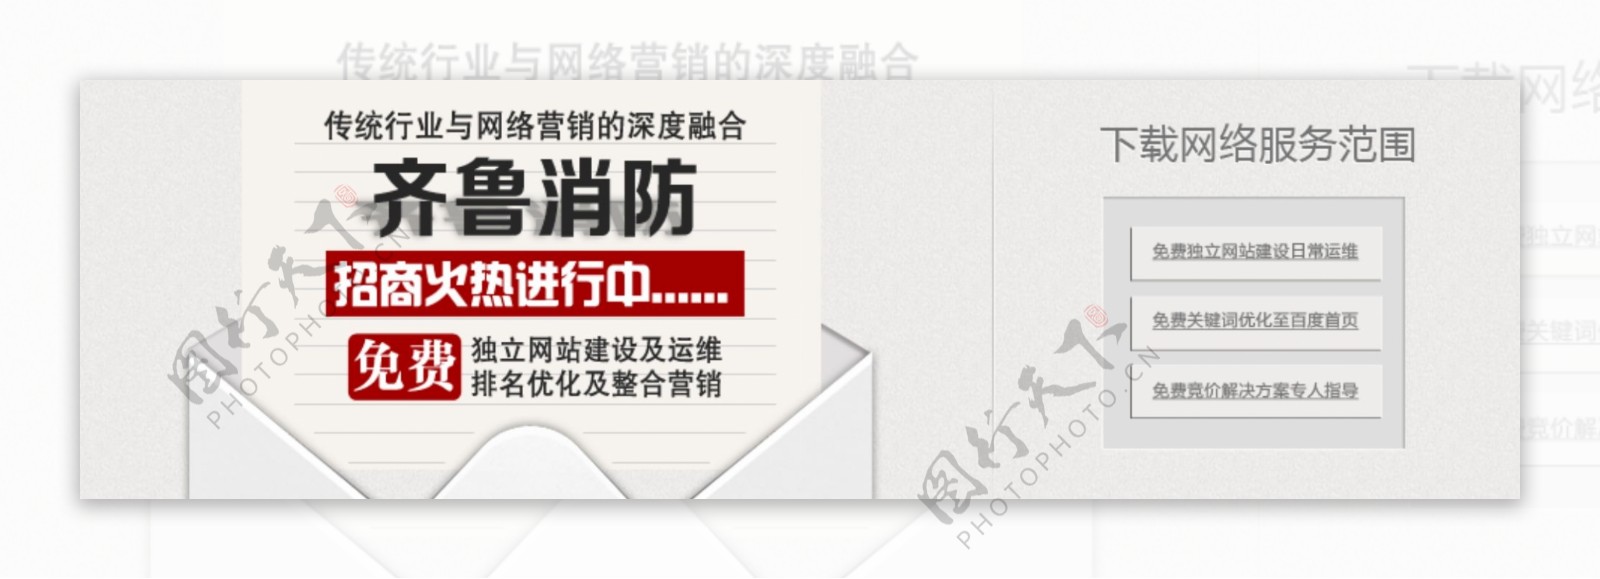 企业招商网站banner横幅广告